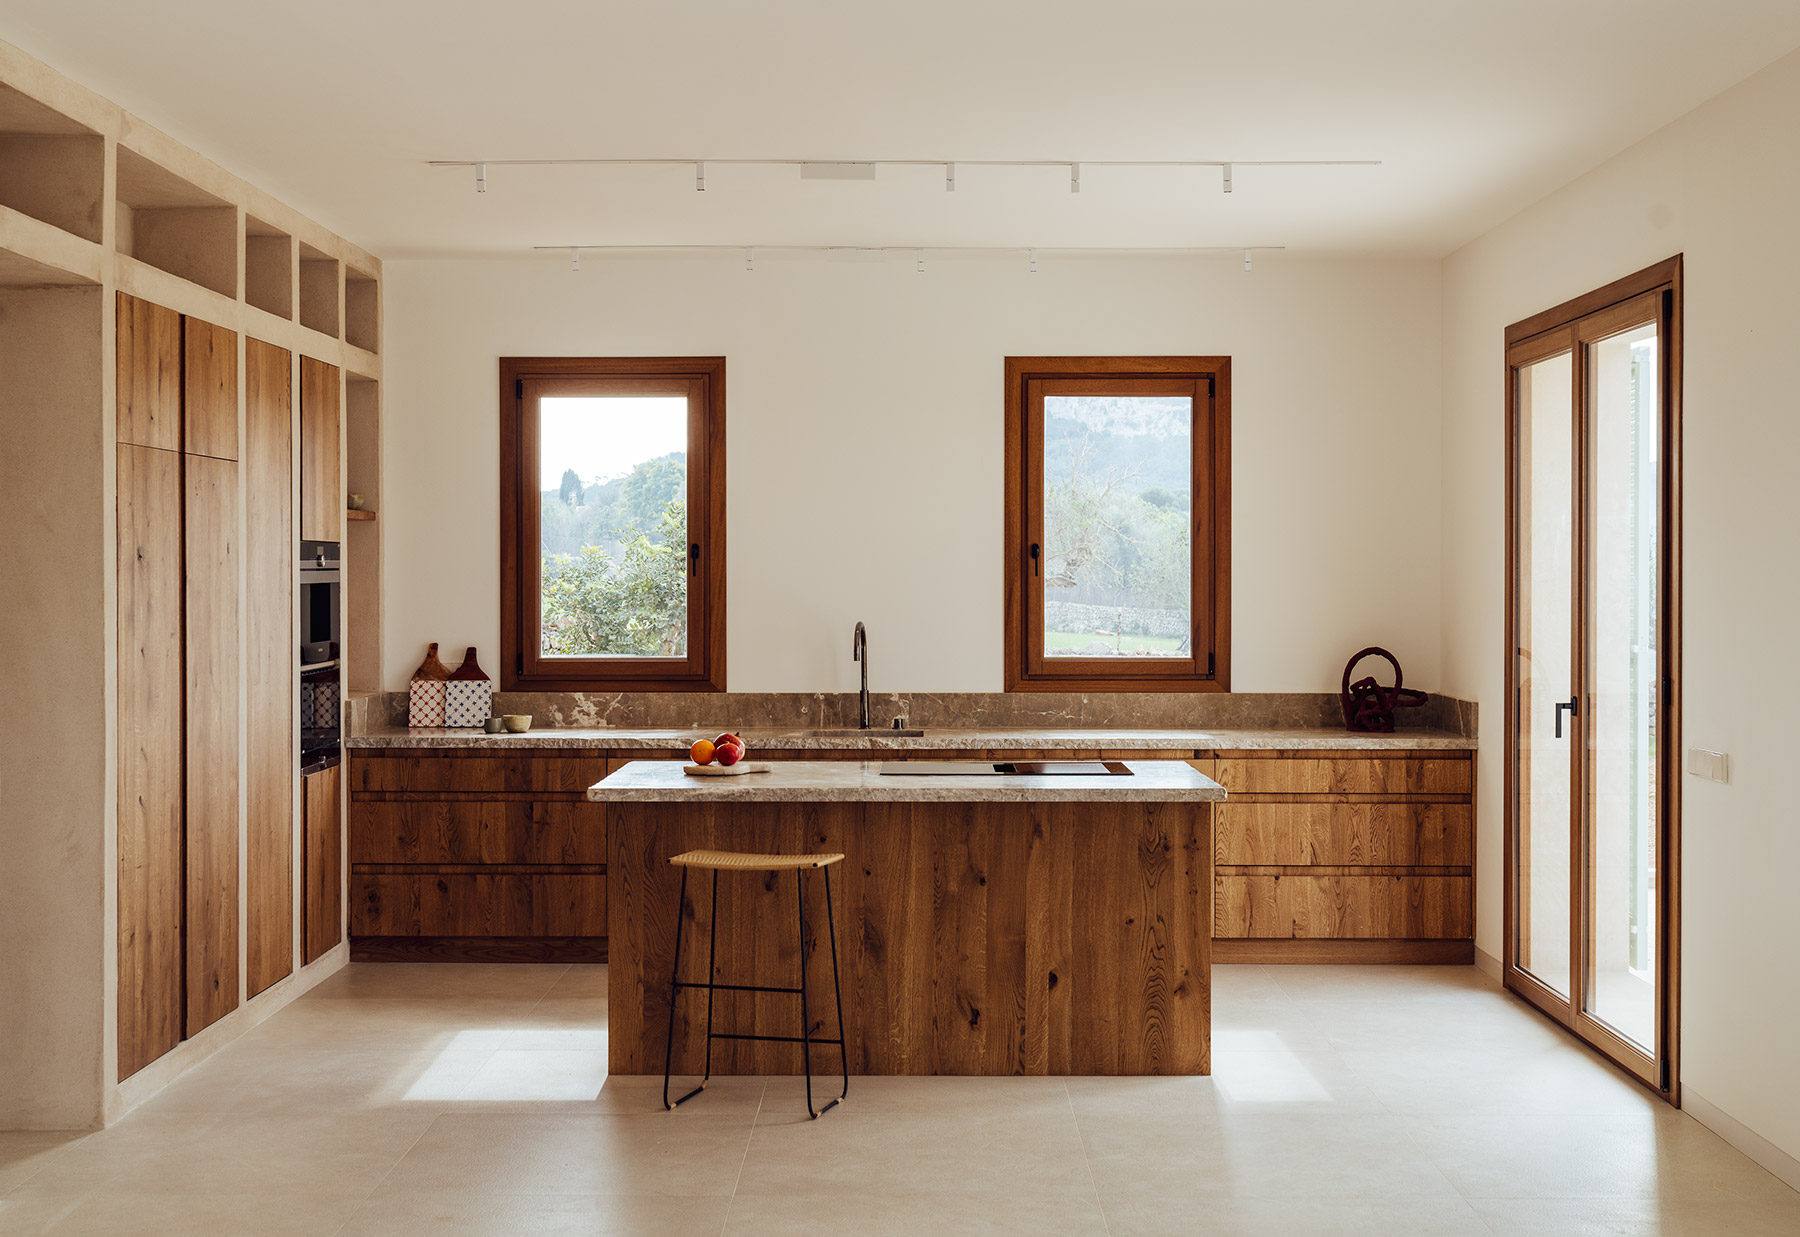 El estudio Bloomint Design realiza el interiorismo de Can Roig, una casa construida con arquitectura tradicional en el interior de Mallorca rodeada de un entorno natural extraordinario